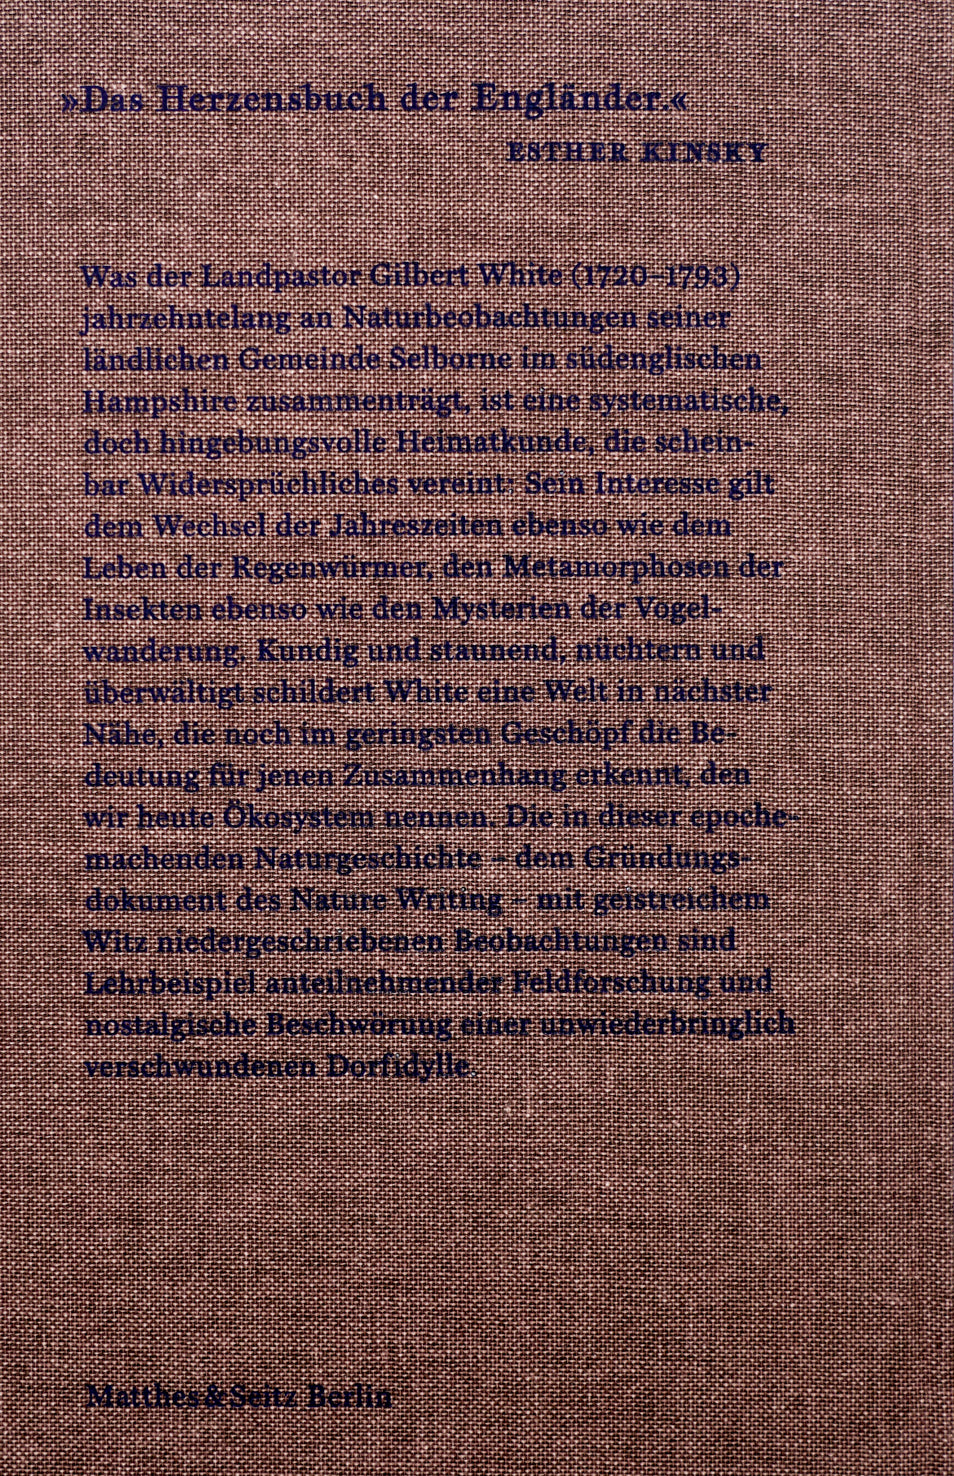 Rückseite des Buchs, wieder in braunem Canvas Einband und mit einem in Siebdruck gedruckten Klappentext. 